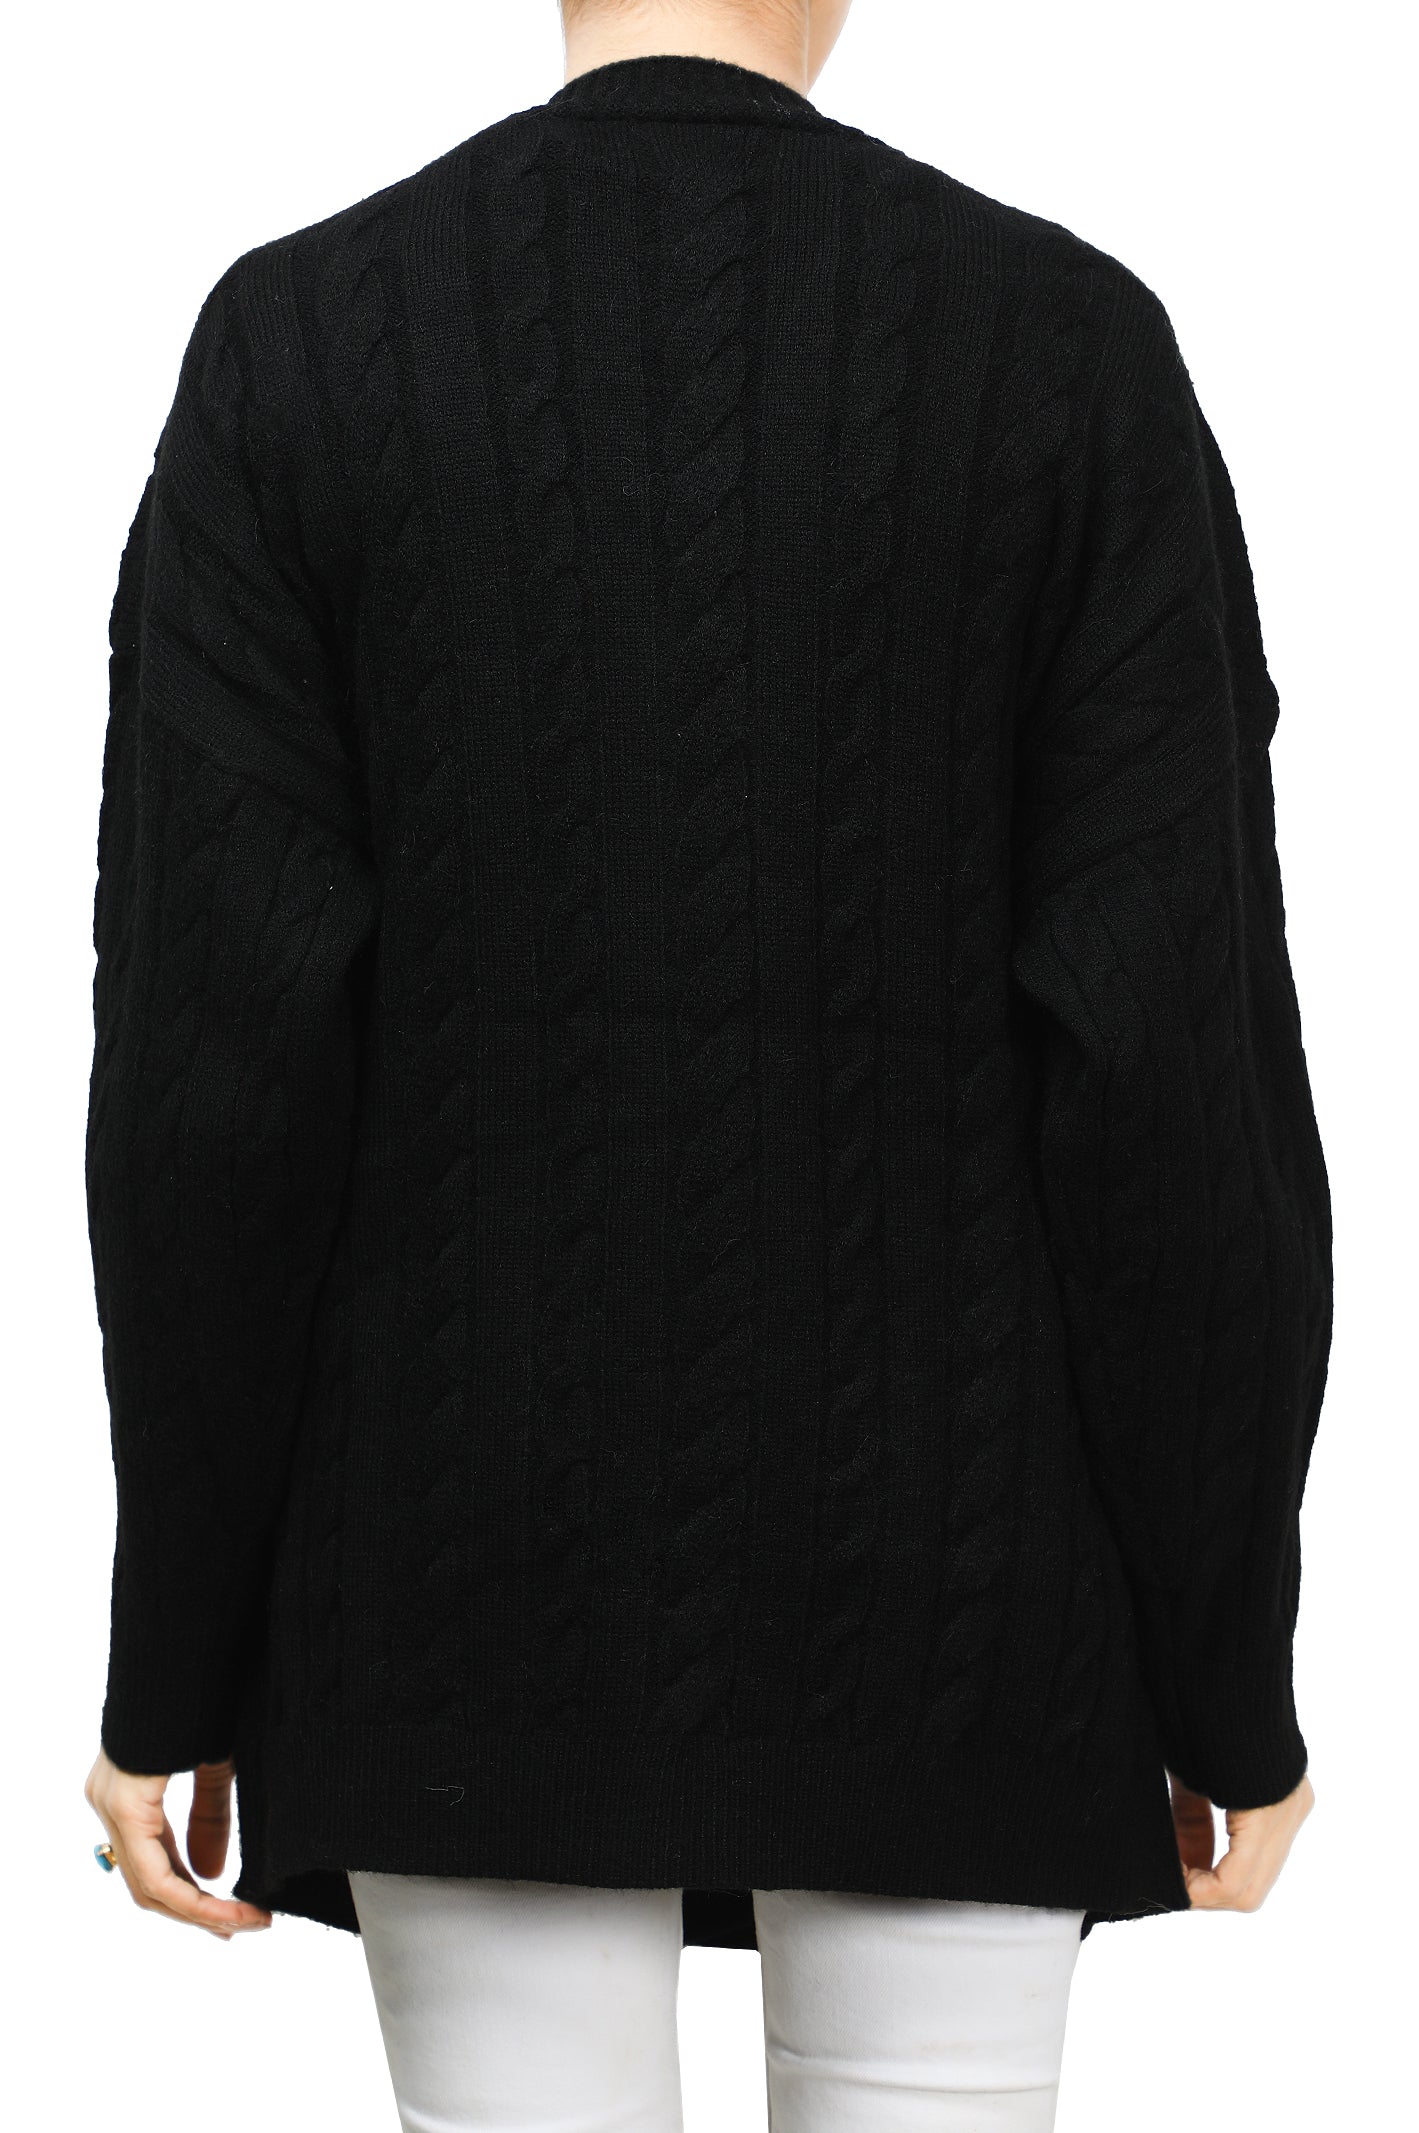 Ladies Sweater SKU: SL981-BLACK - Diners